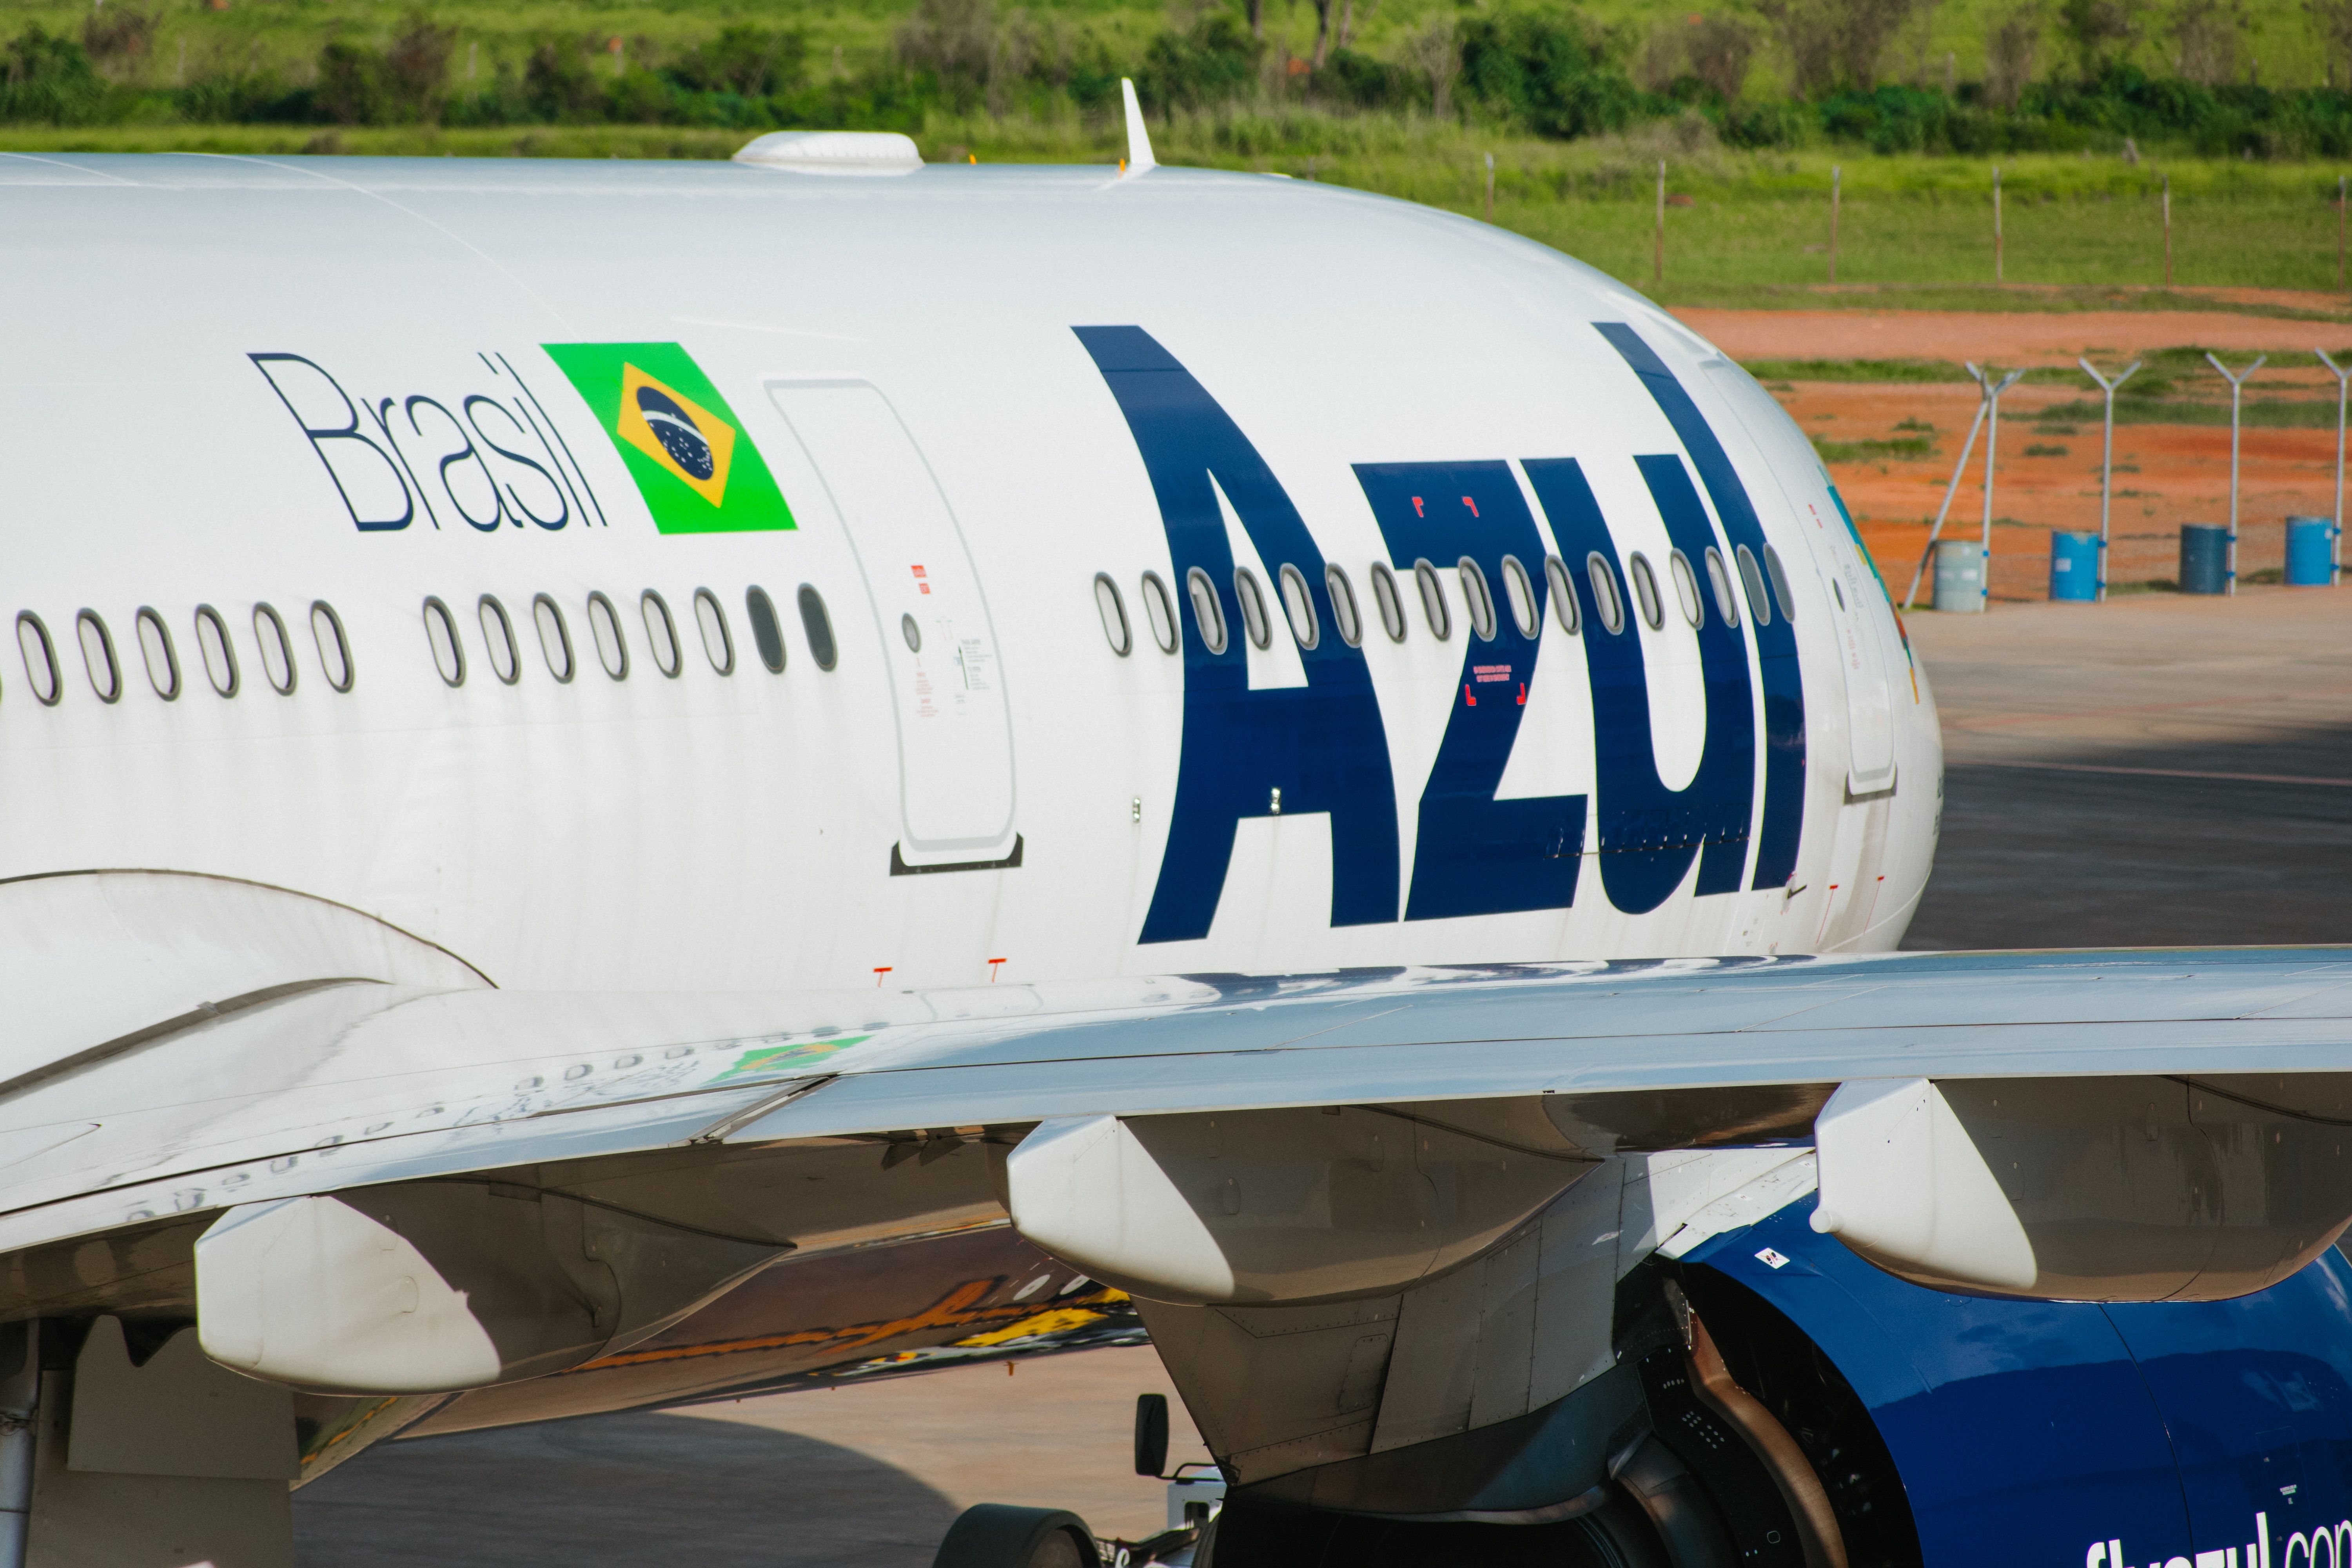 Azul Airbus A330neo at Azul's hangar at VCP